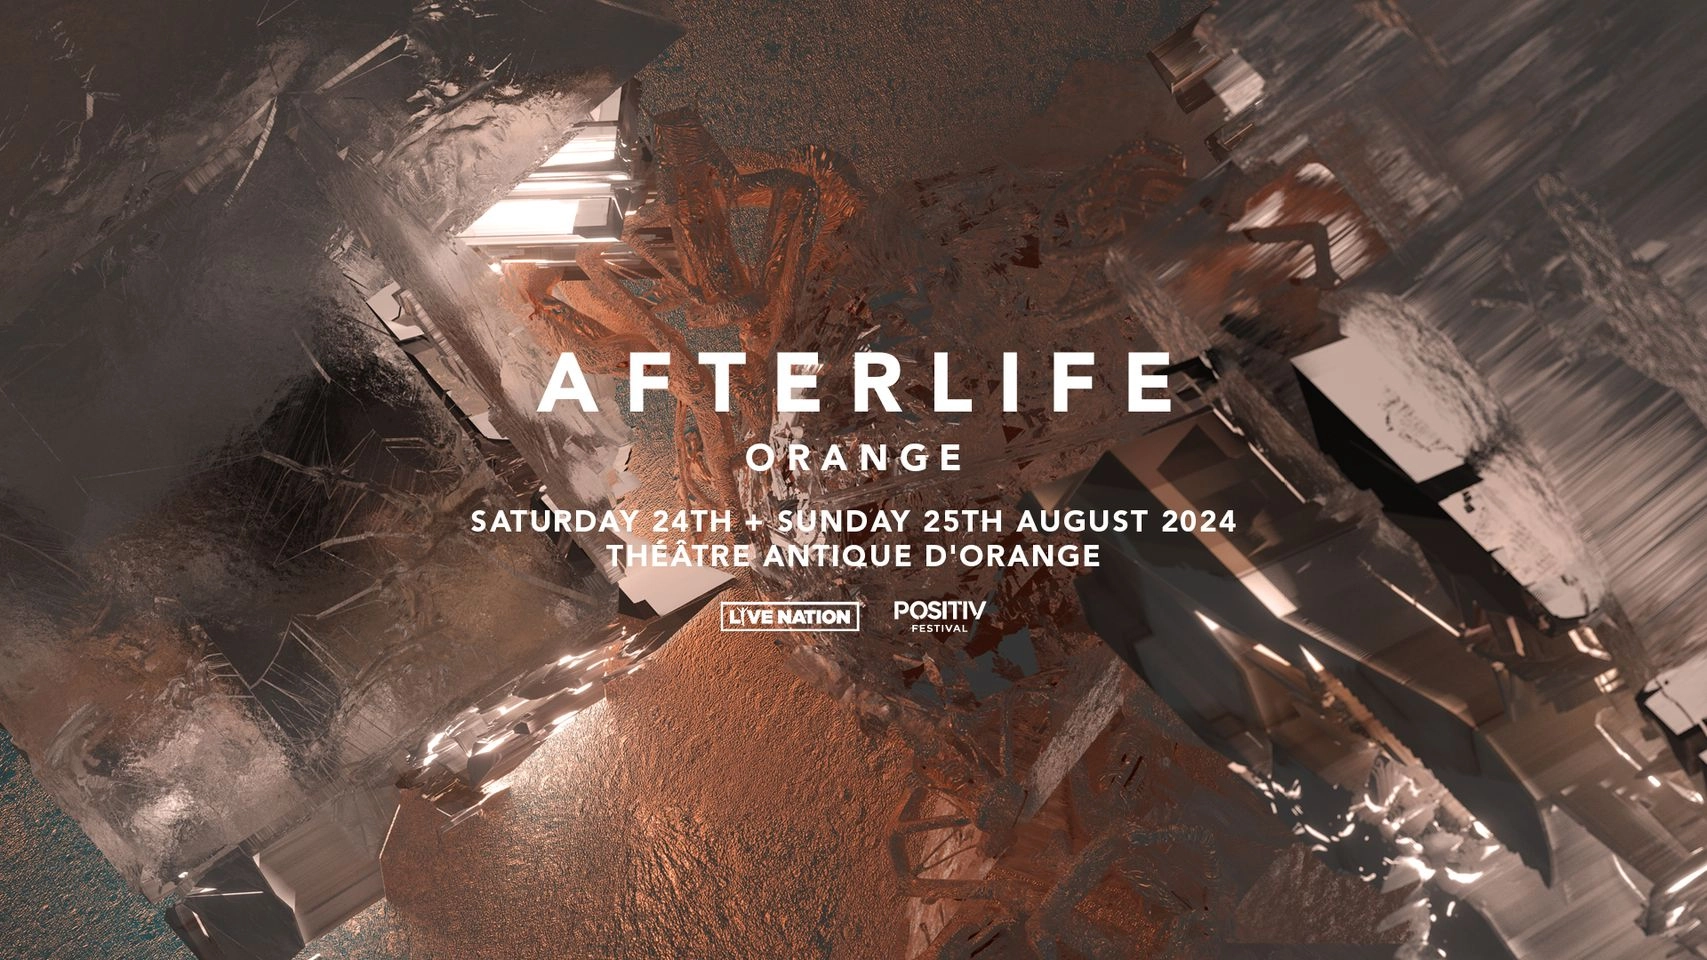 Afterlife Orange 2024 - Dimanche in der Theatre Antique Orange Tickets